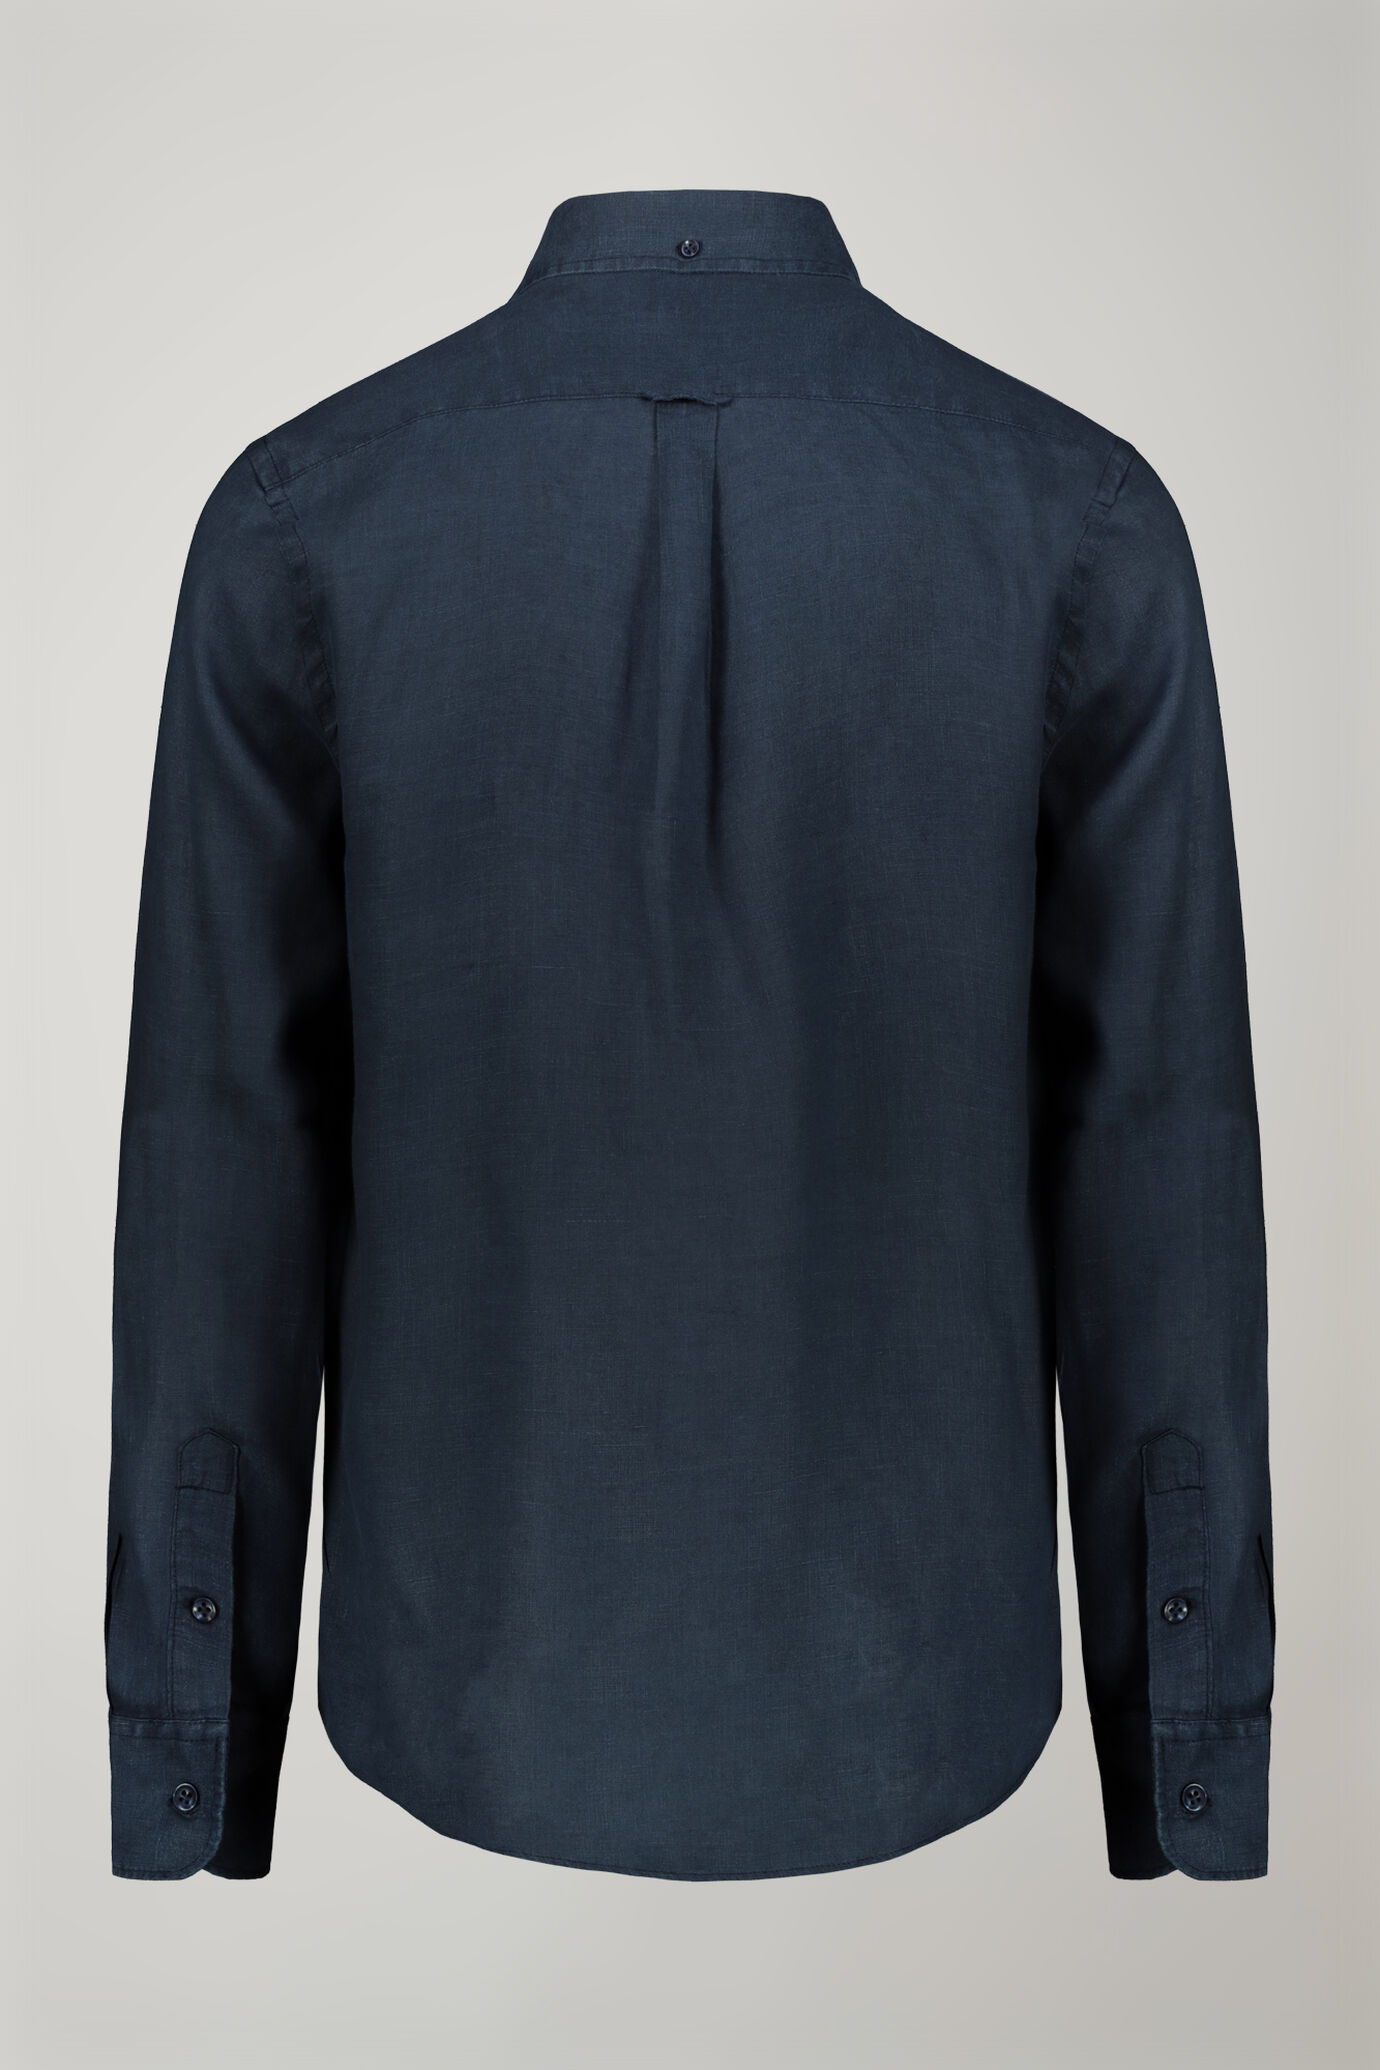 Camicia casual uomo collo button down 100% lino comfort fit image number 6